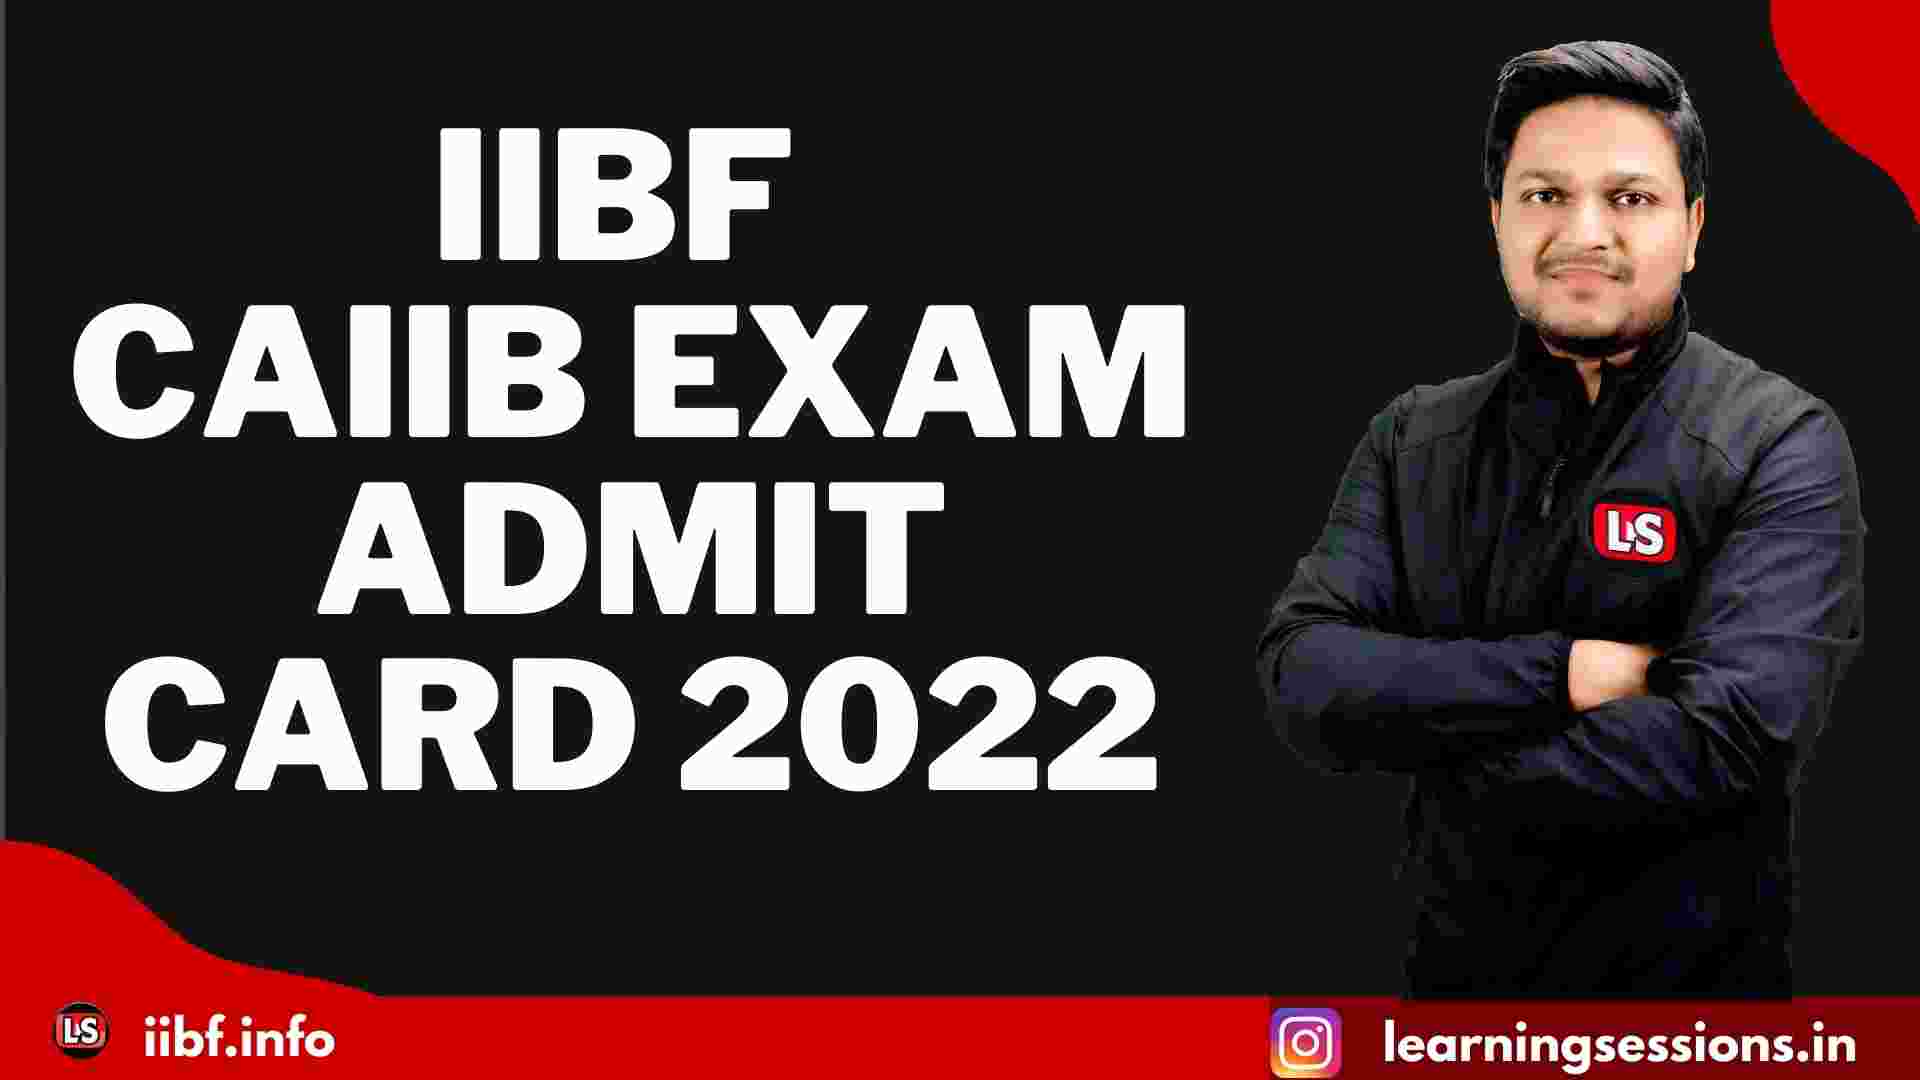 IIBF CAIIB EXAM Admit Card 2022